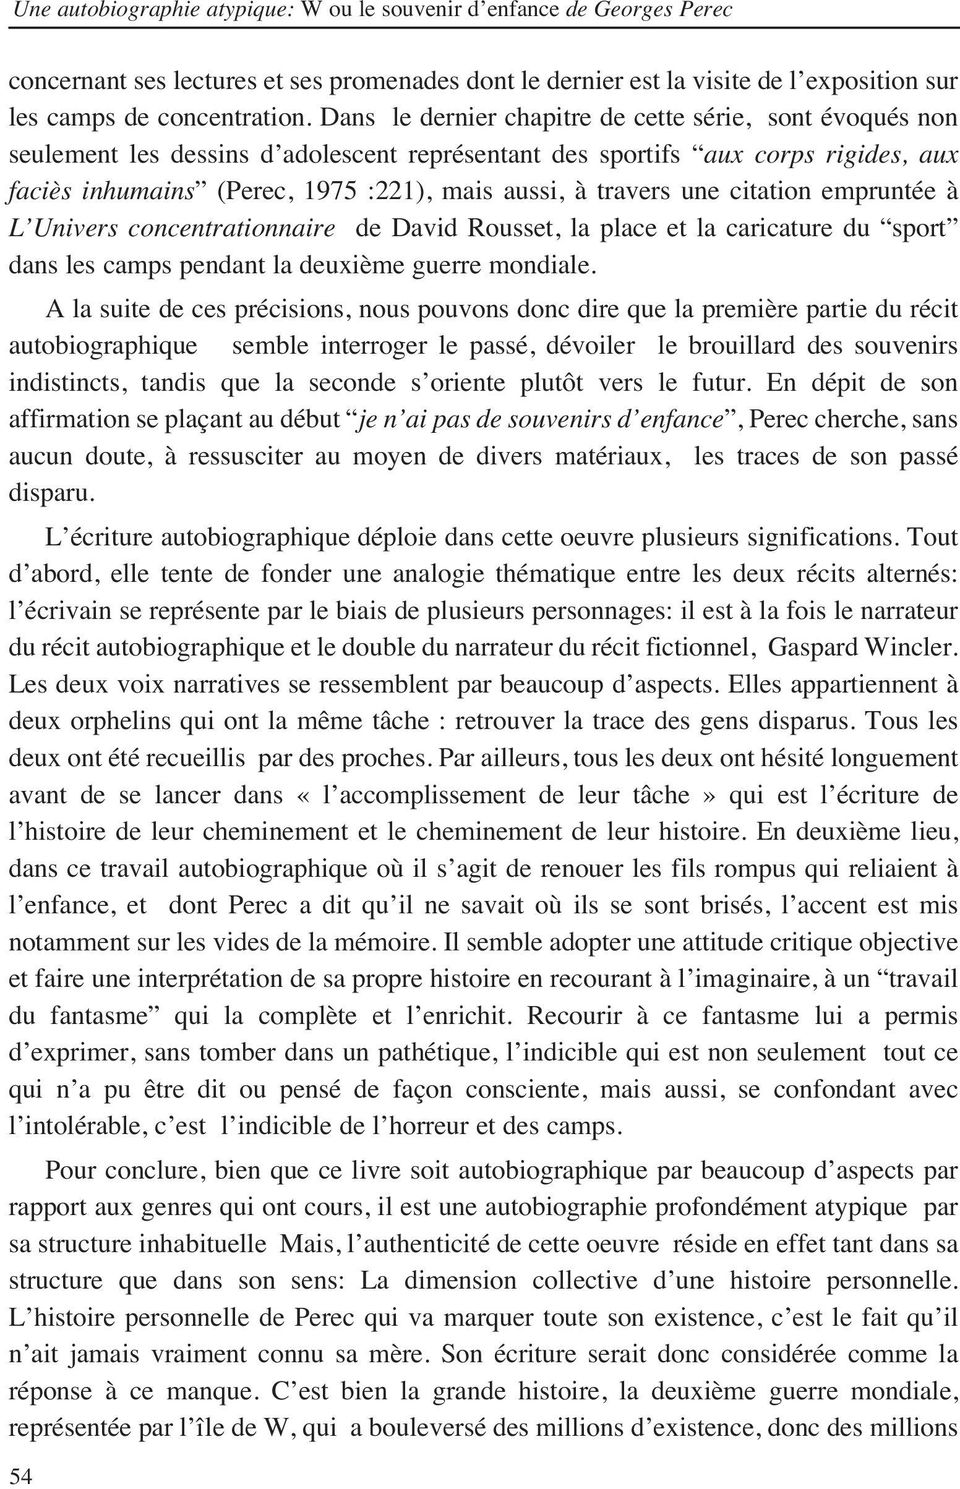 Une Autobiographie Atypique W Ou Le Souvenir D Enfance De Georges Perec Pdf Telechargement Gratuit